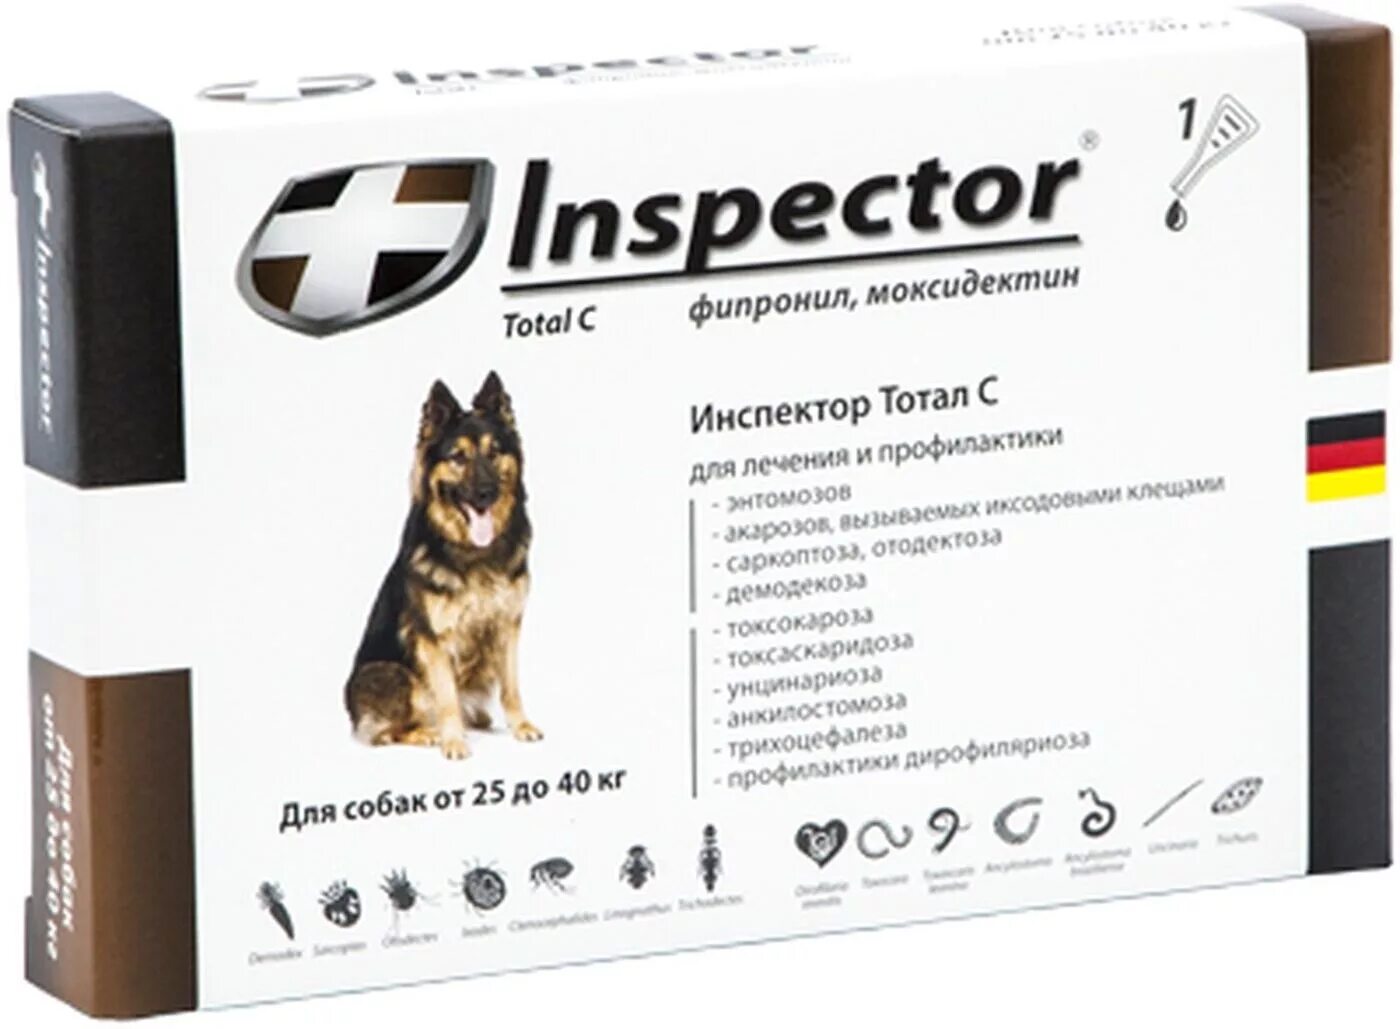 Атакса капли для собак цена. Инспектор Quadro с капли для собак 25-40 кг. Inspector  капли Квадро для собак 25-40. Таблетки для собак от паразитов 40кг. Капли инспектор д/собак от 4-10кг.